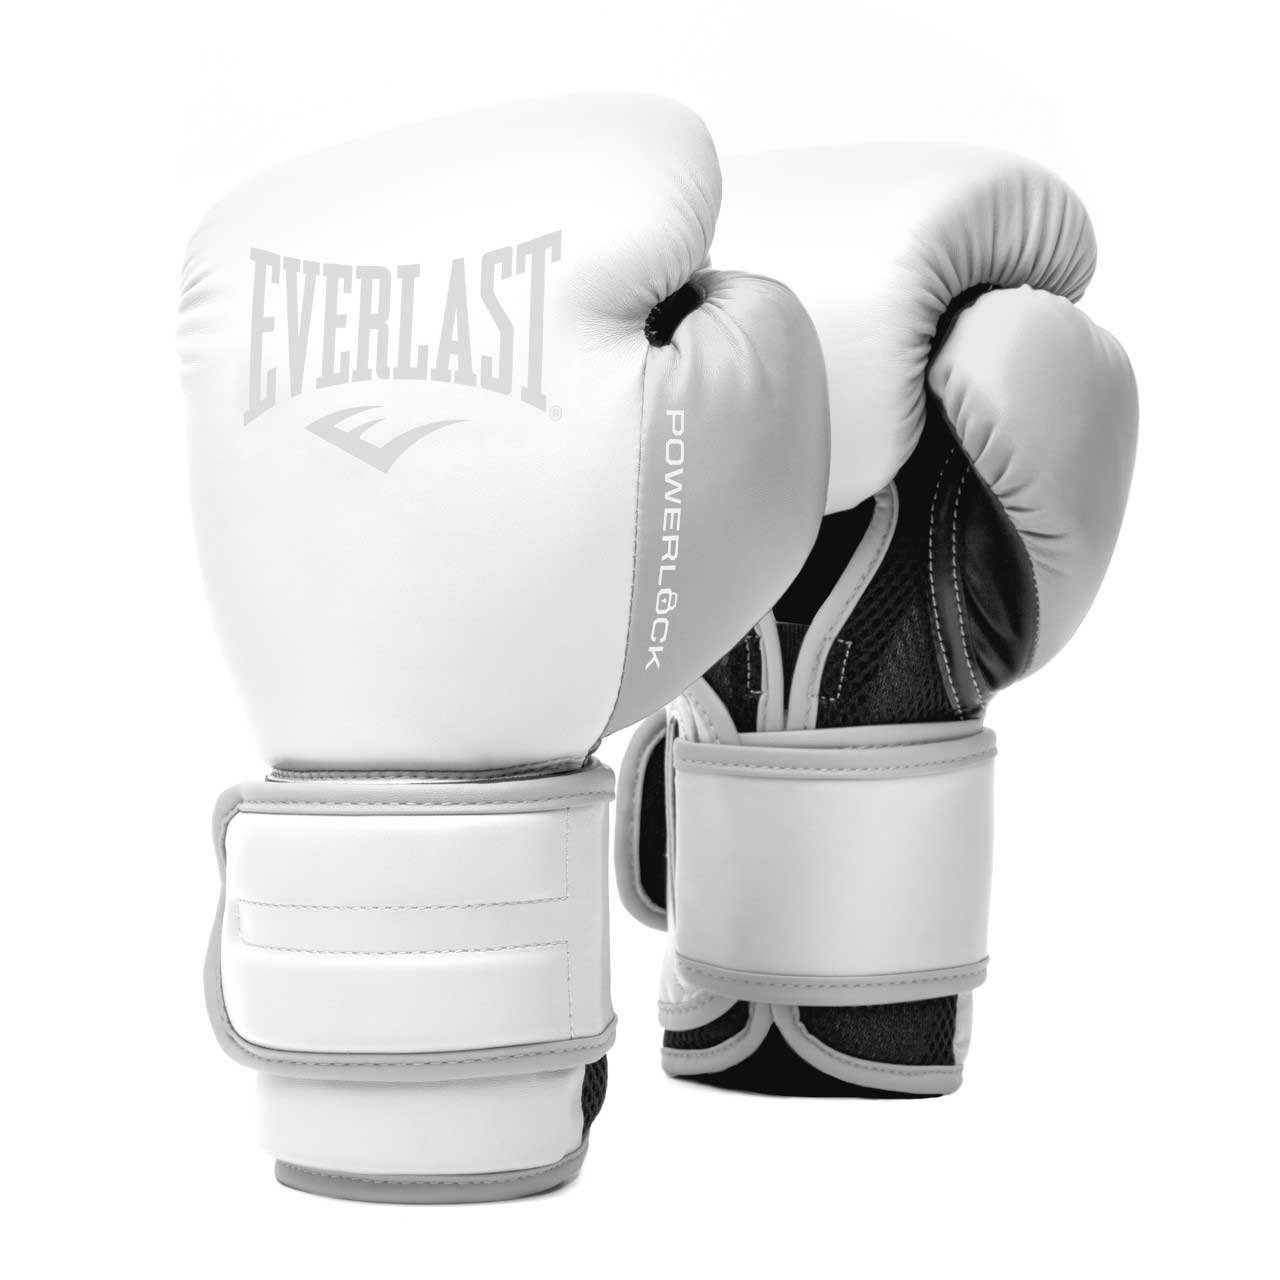 Everlast Boxhandschuhe POWERLOCK 2R, maximale Weiß intensiven Trainingseinheiten bei Temperaturkontrolle